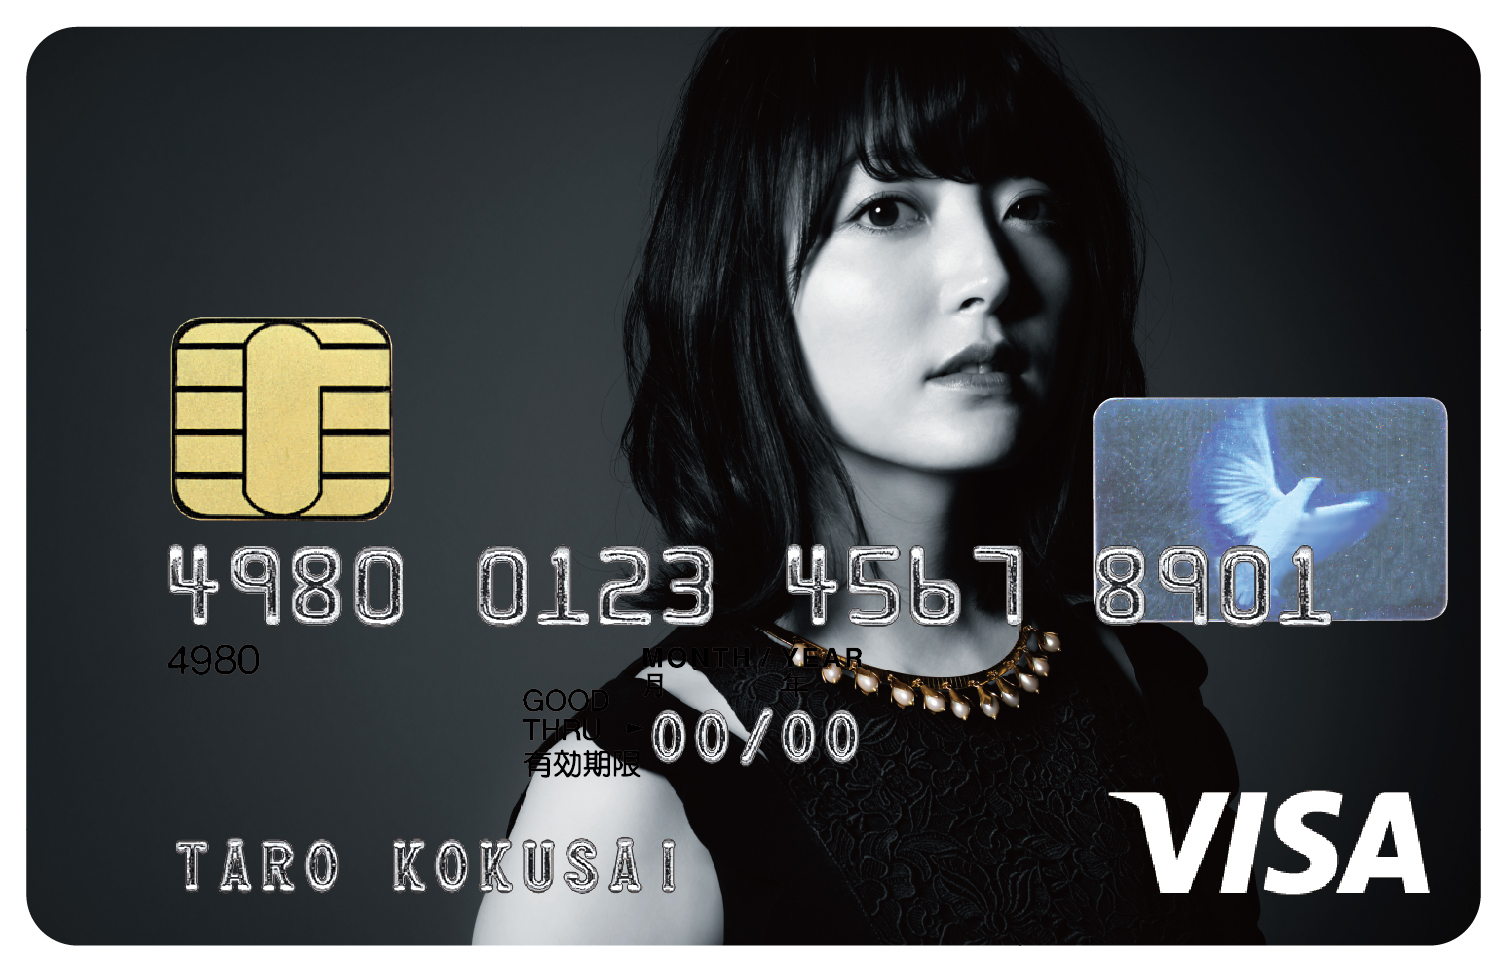 人気声優 花澤香菜さんとコラボレーションした「花澤香菜VISAカード」が誕生｜三井住友カード株式会社のプレスリリース